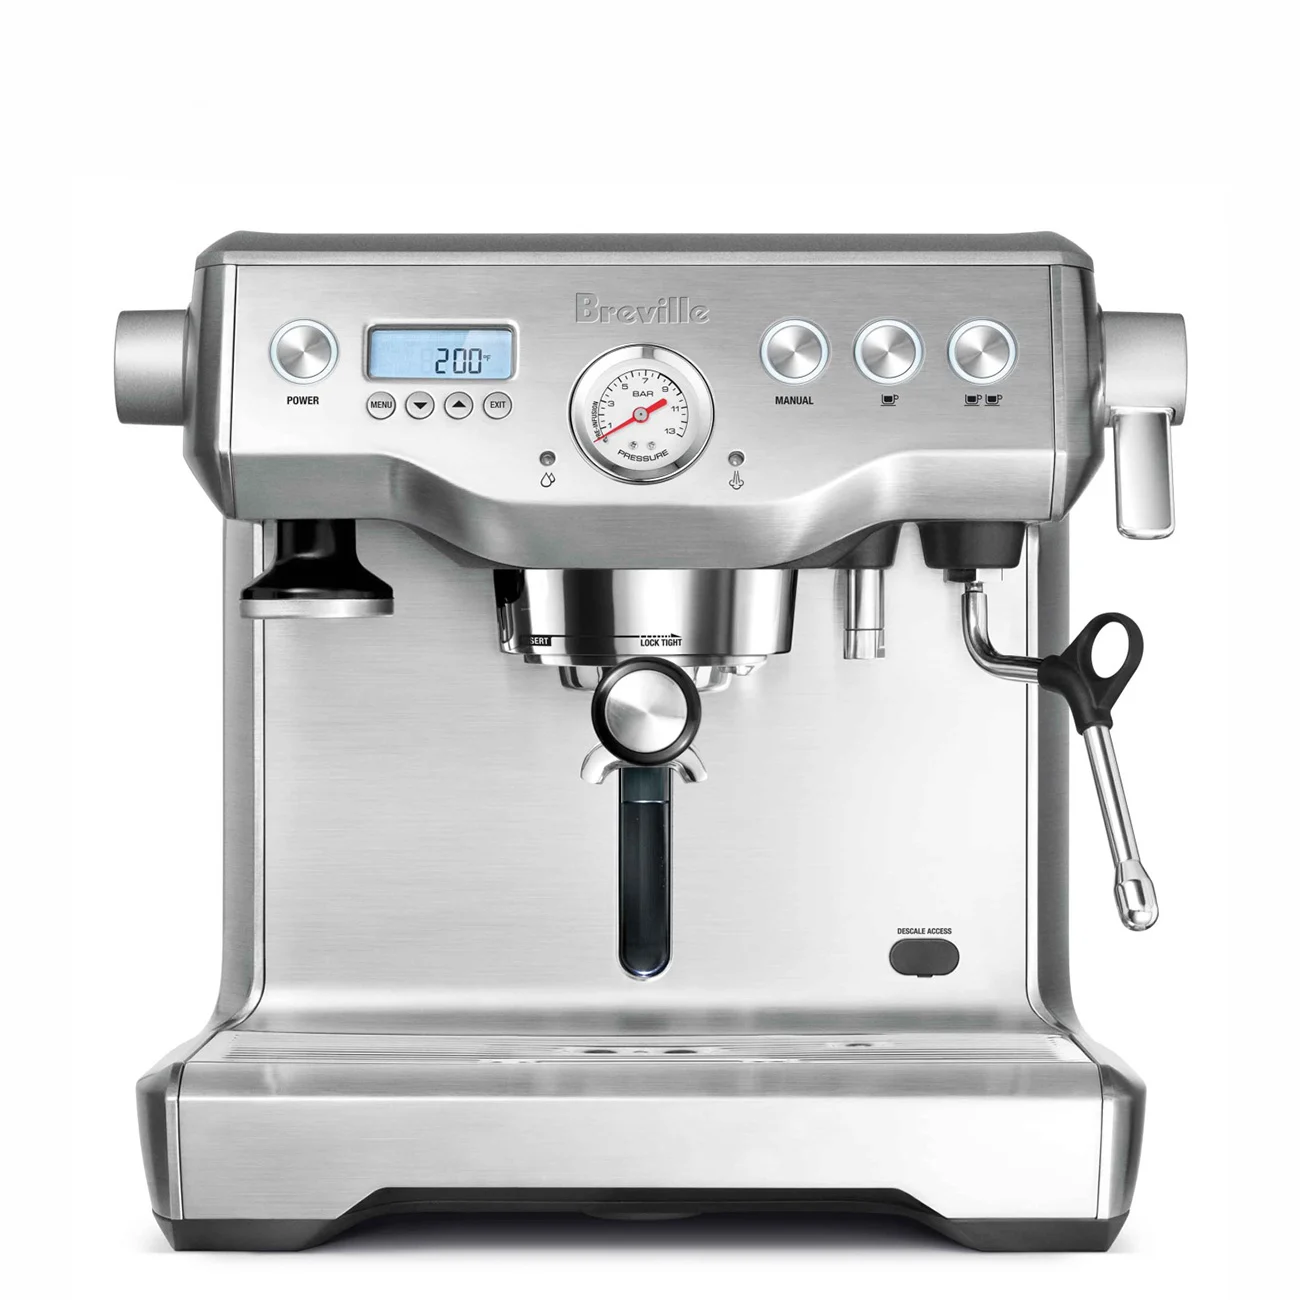 breville dual boiler espresso machine